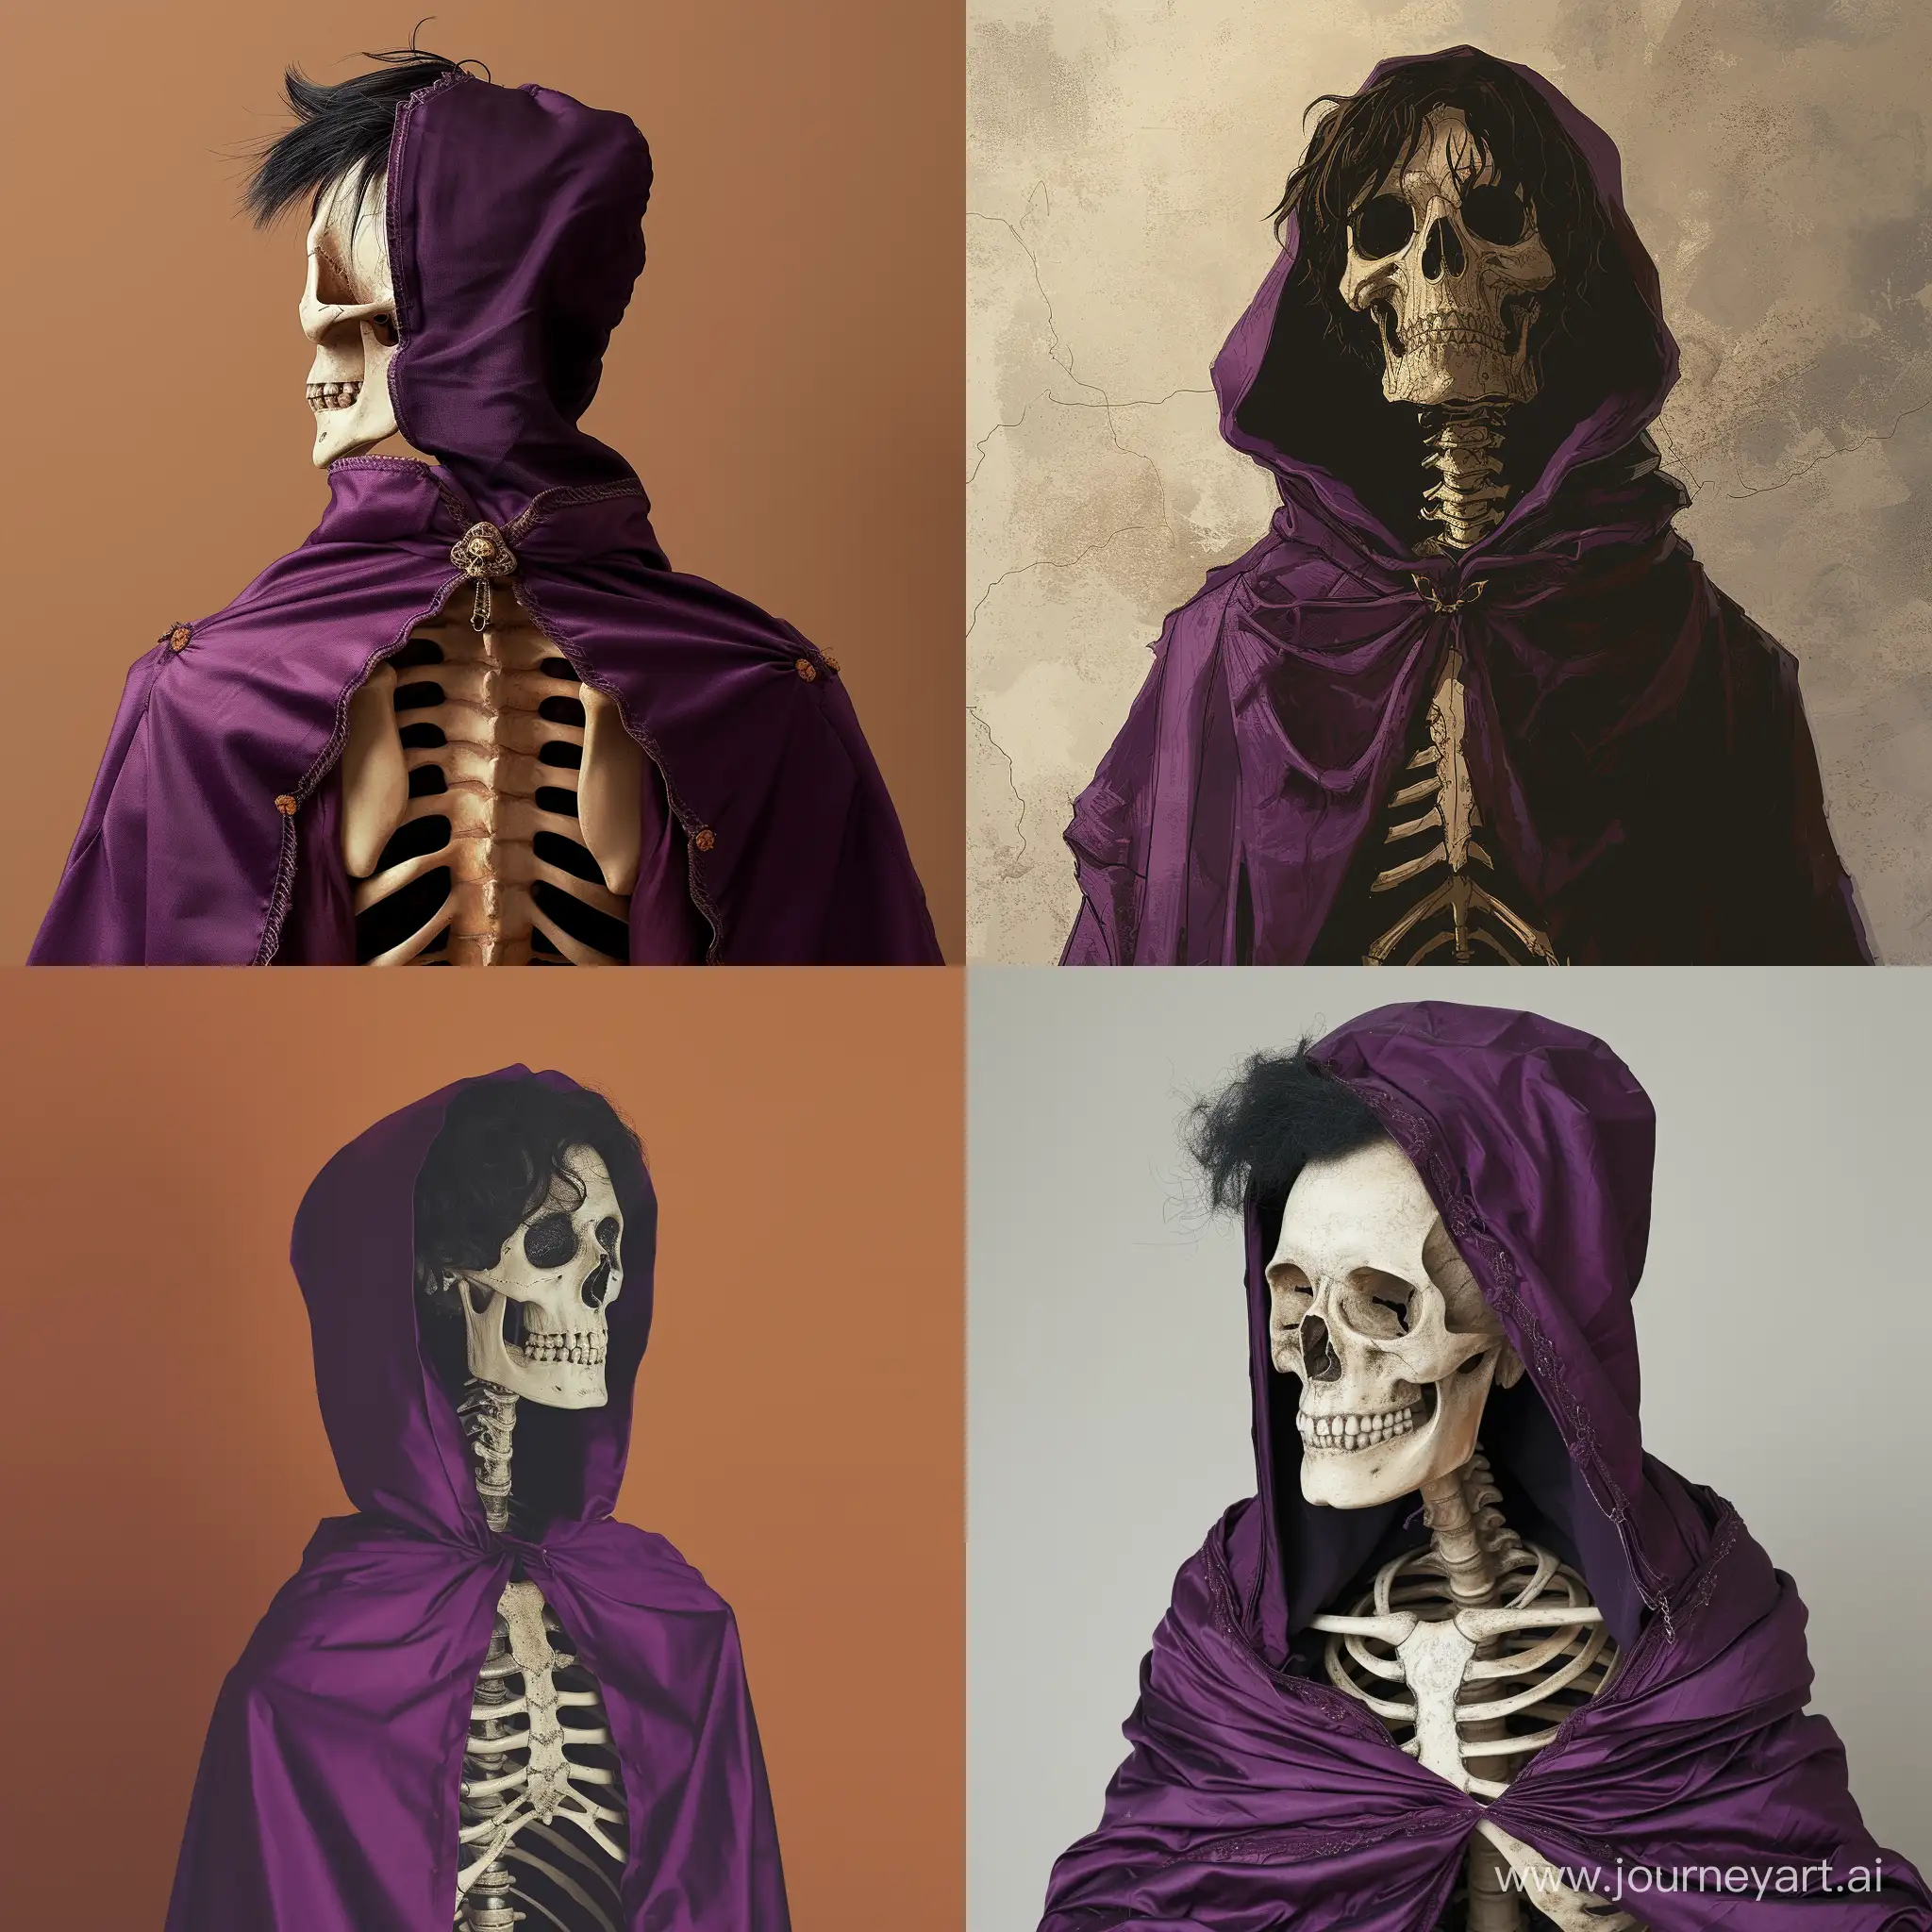 Mysterious-Skeleton-Figure-in-Purple-Cloak-with-Hood-and-Medium-Black-Hair